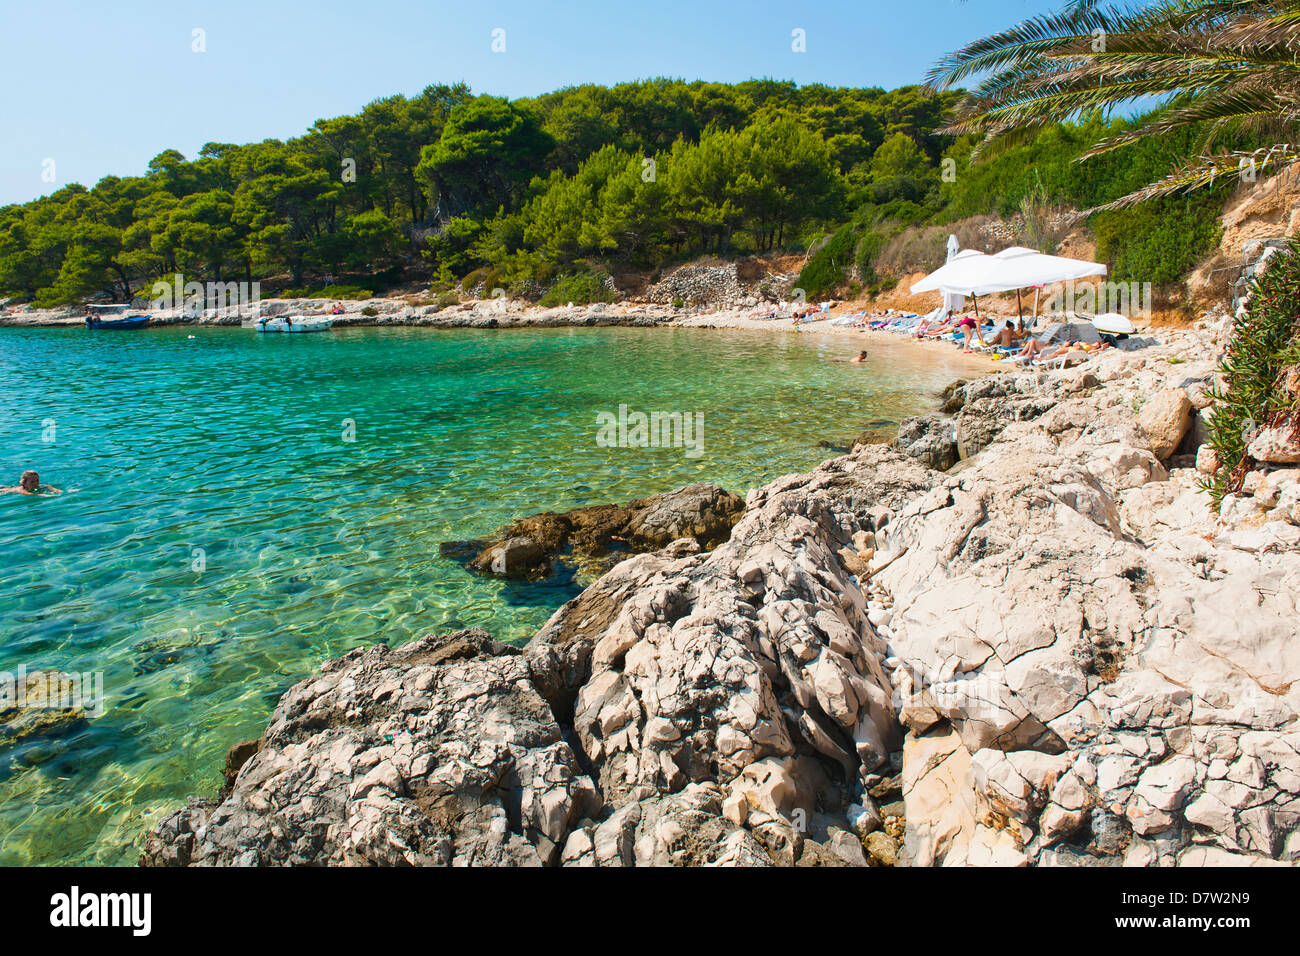 Dans la plage des îles Pakleni (Îles Paklinski), de la côte dalmate, Mer Adriatique, Croatie Banque D'Images